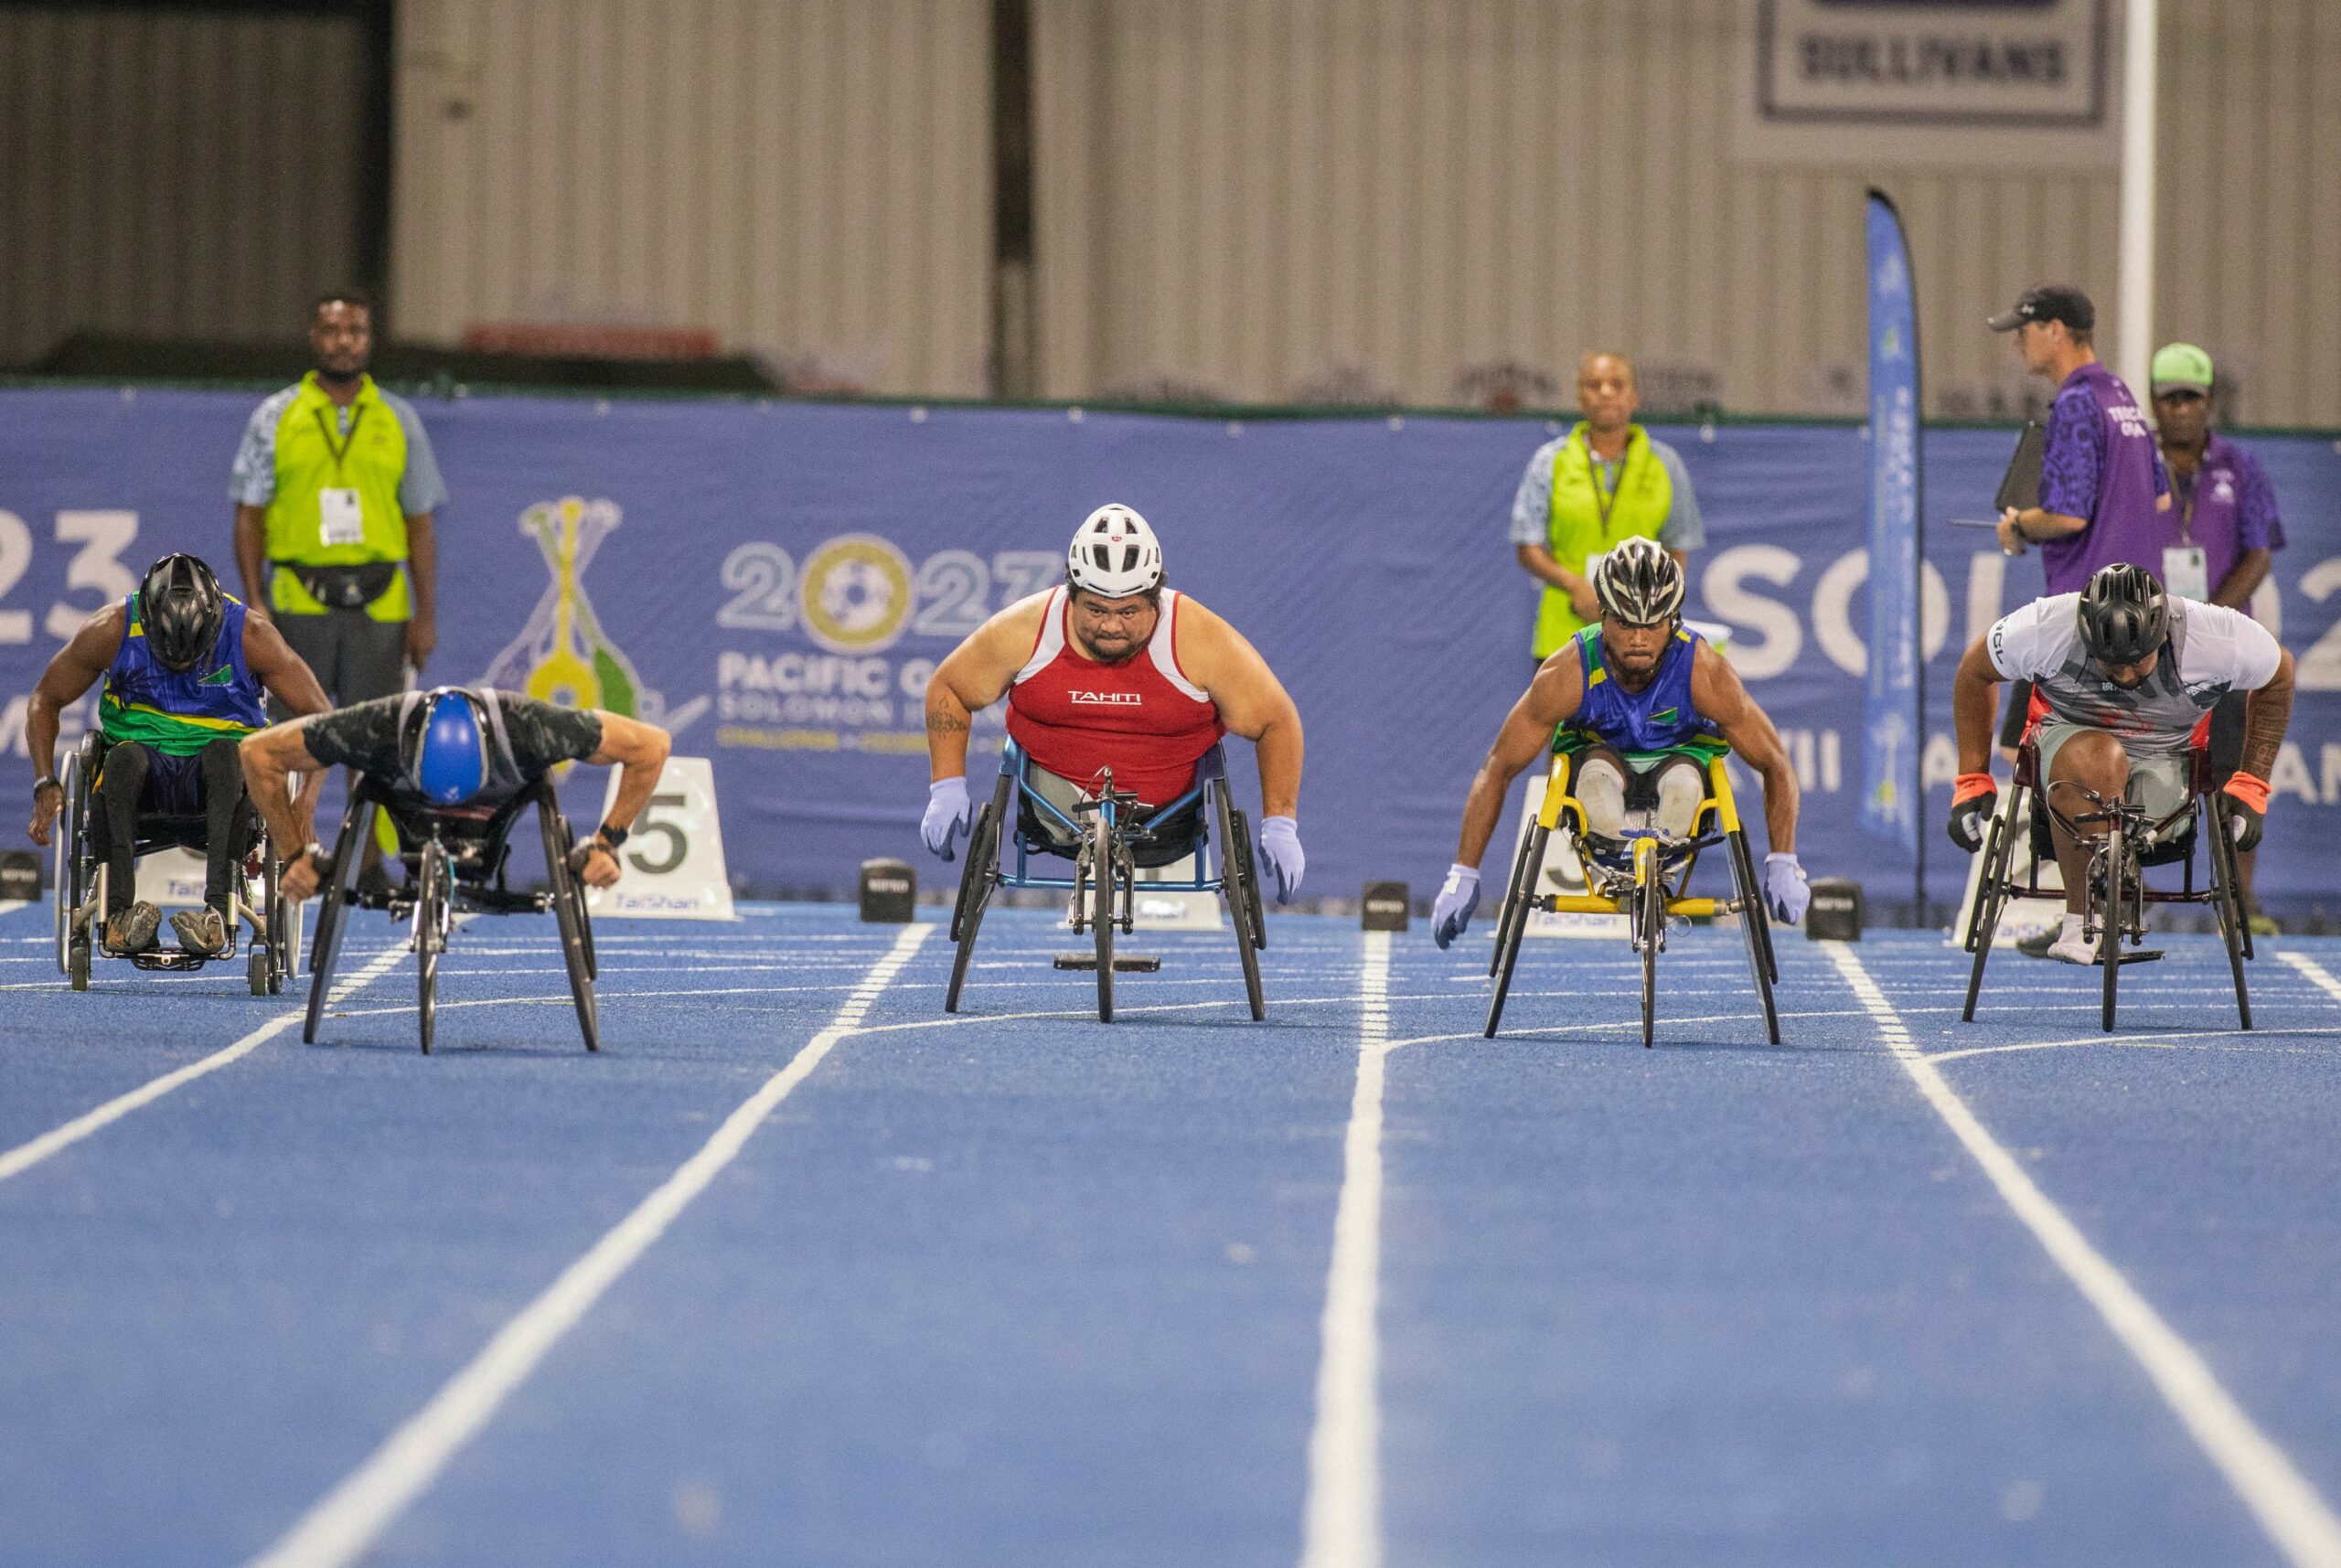 Men racing in wheelchairs